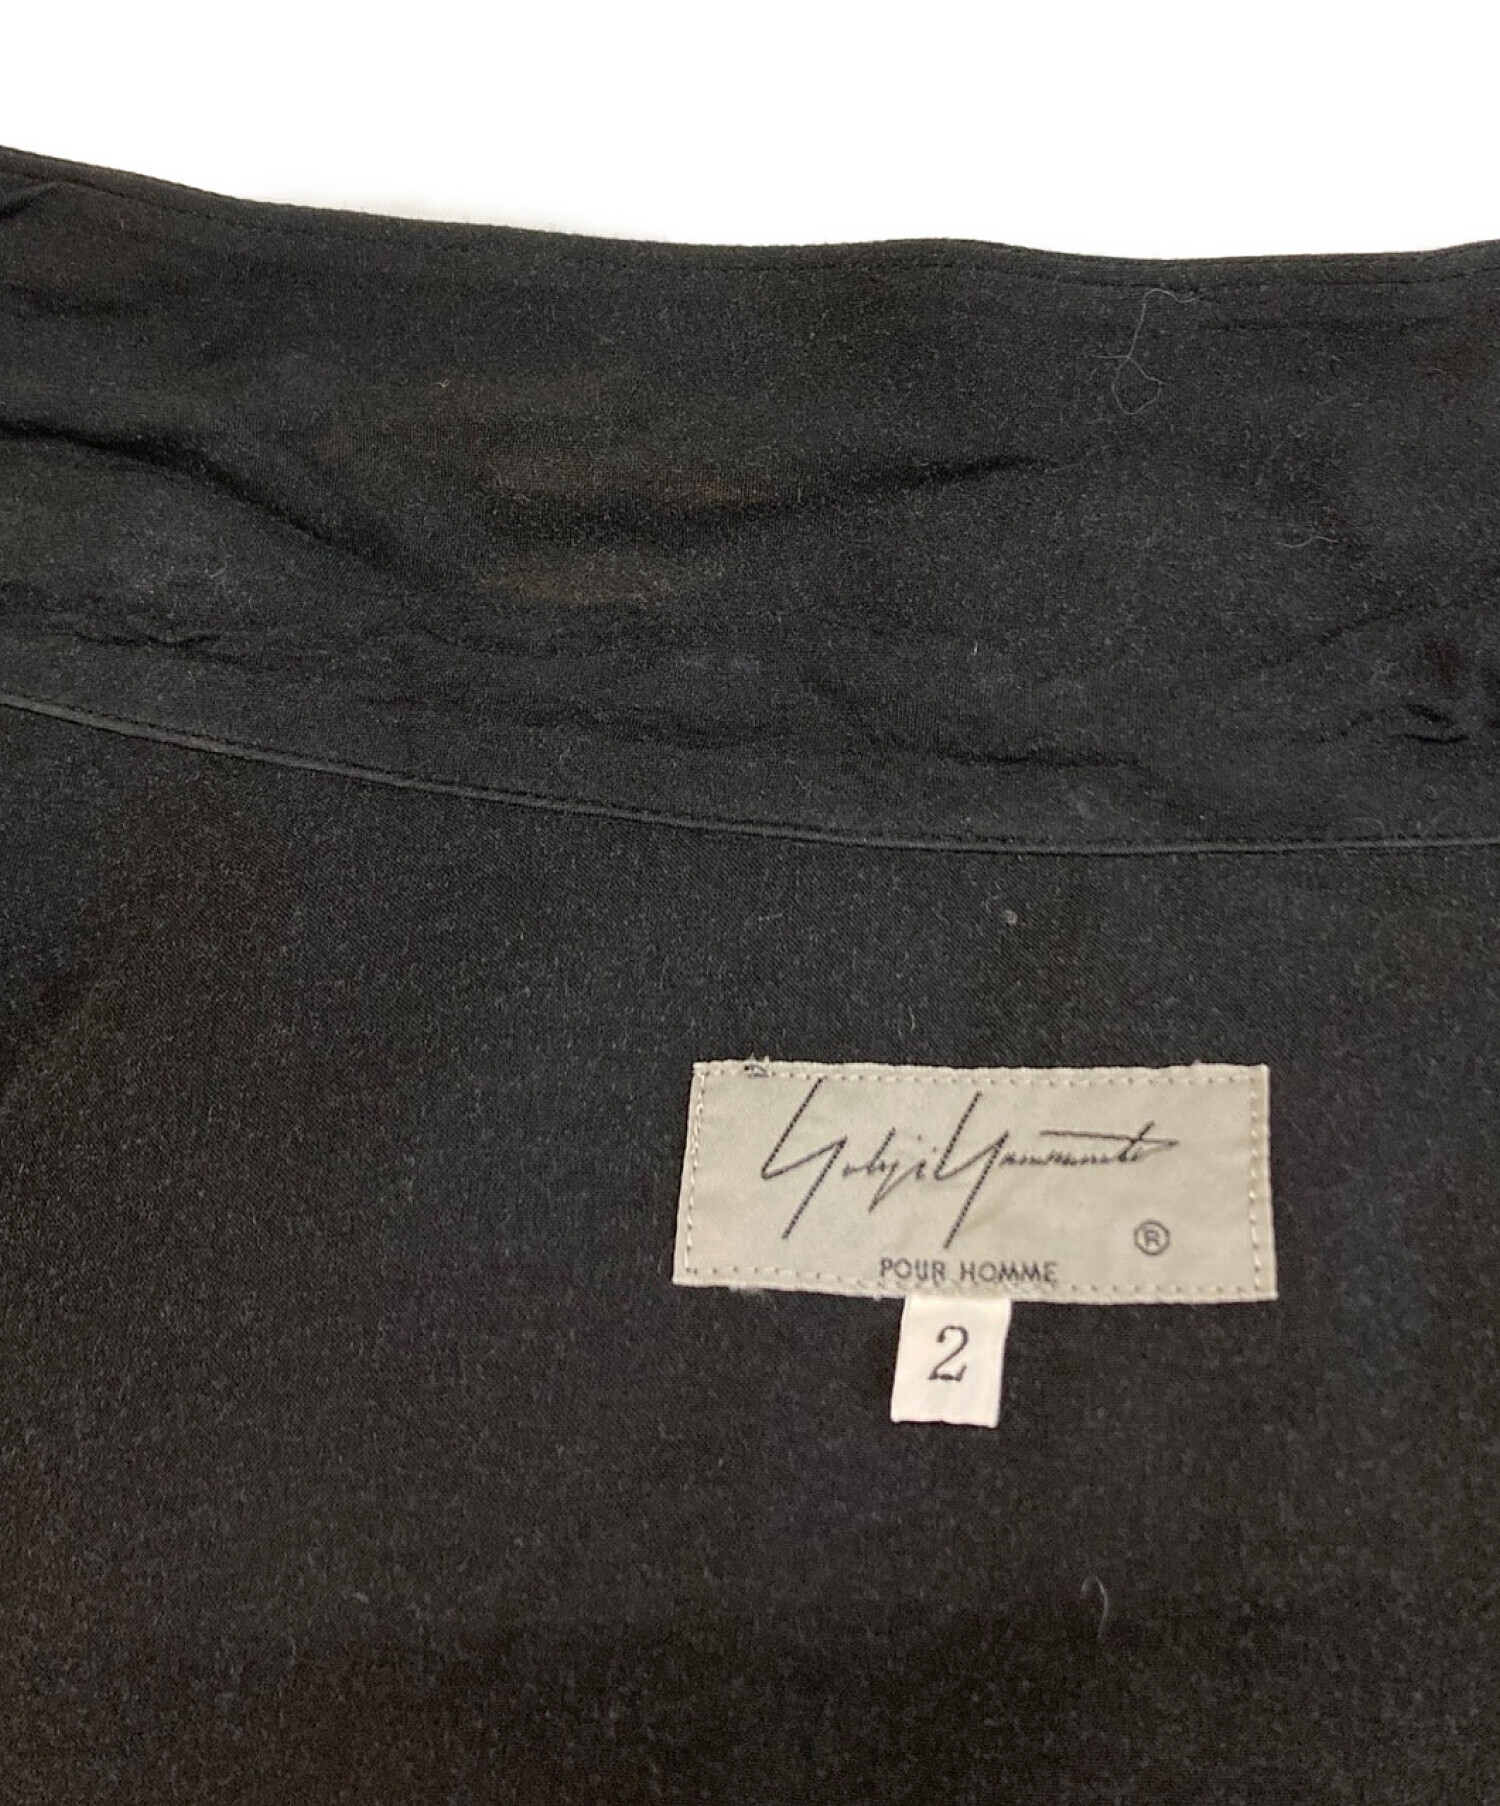 Yohji Yamamoto pour homme (ヨウジヤマモト プールオム) 19SS 全部やって死ね ロングシャツ ブラック サイズ:2